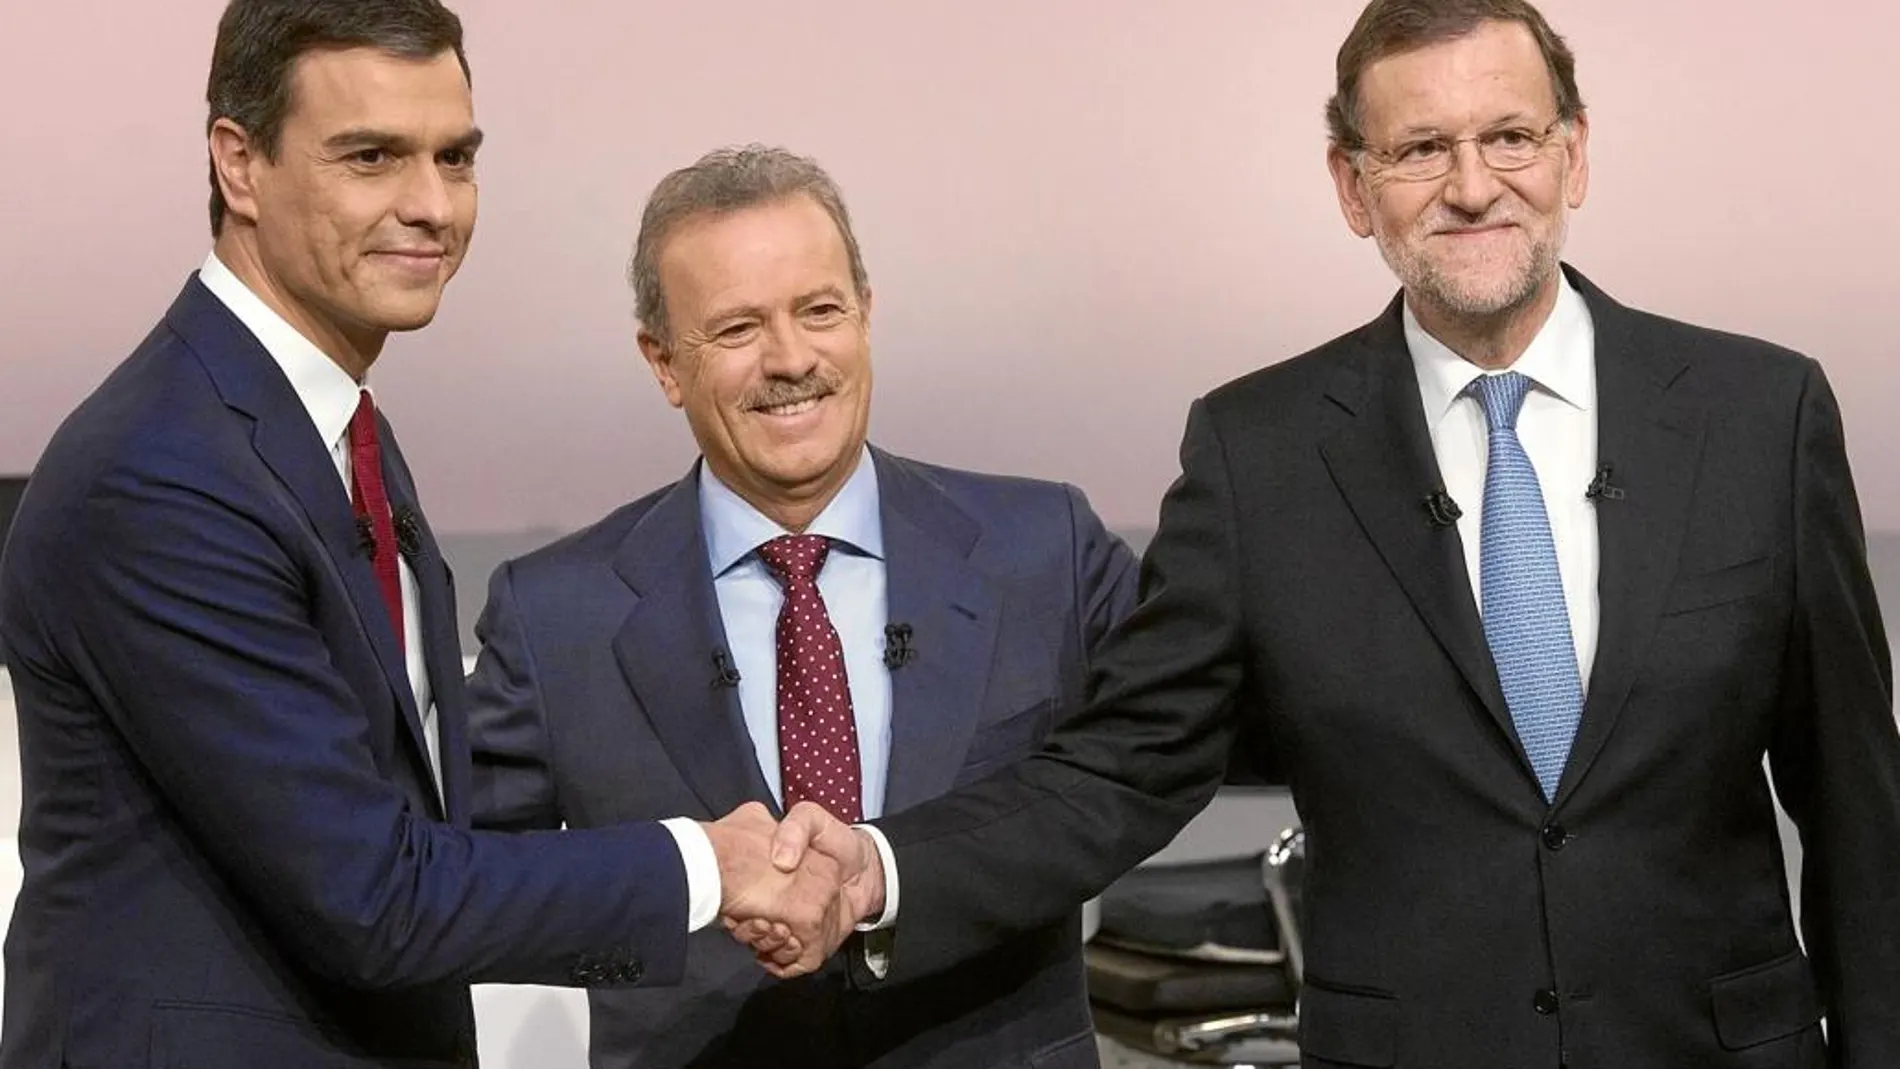 Rajoy-Sánchez (2015) En esta ocasión, el candidato socialista perdió toda credibilidad cuando tachó a Mariano Rajoy de «indecente». El tono bronco de Sánchez fue la tónica de un debate en el que se limitó a atacar al popular